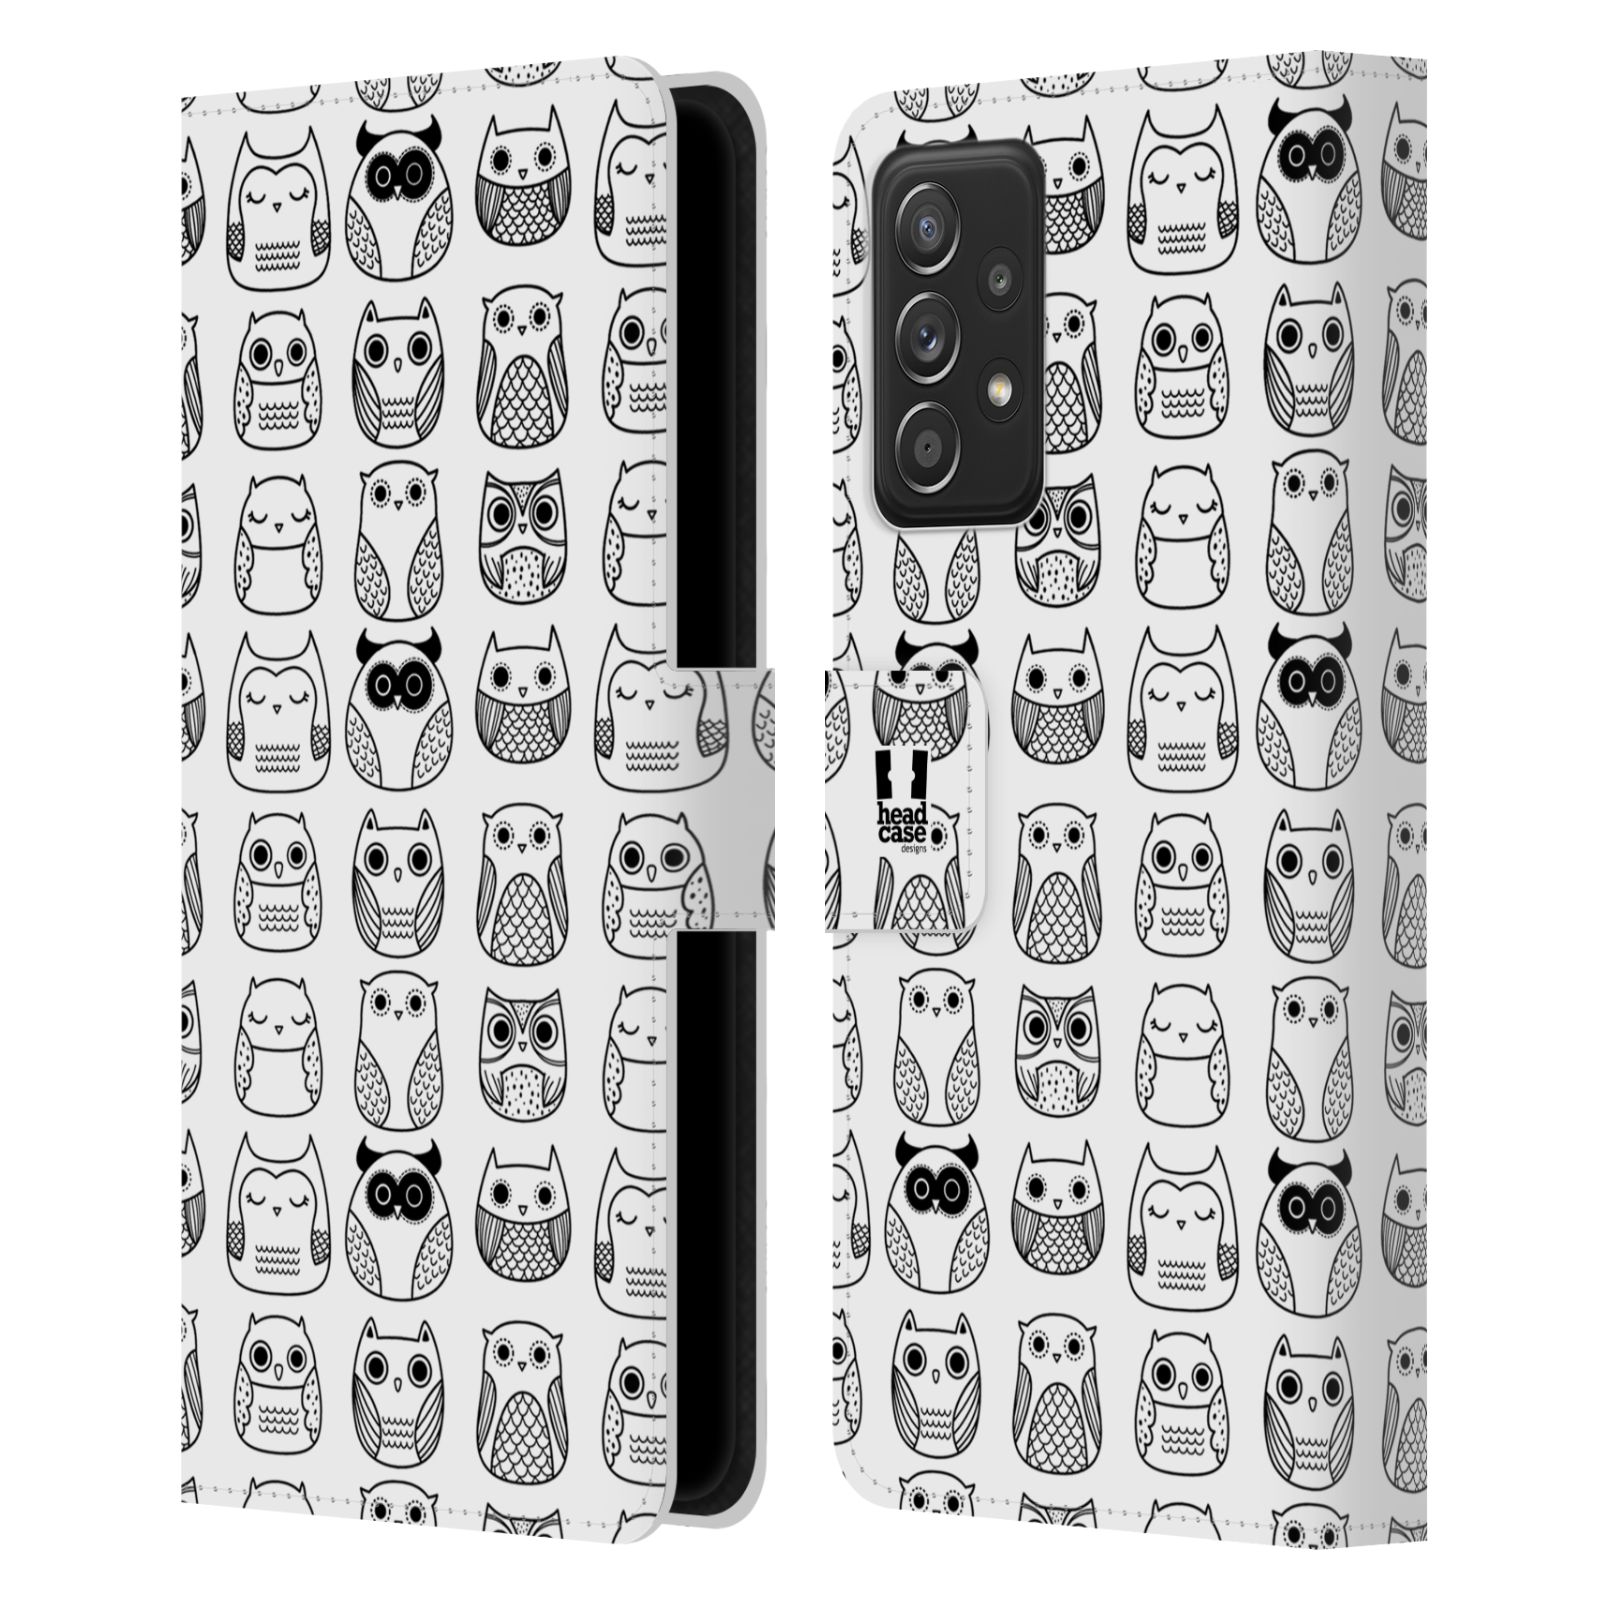 Pouzdro HEAD CASE na mobil Samsung Galaxy A52 / A52 5G / A52s 5G černobílé sovičky kreslené bílá barva